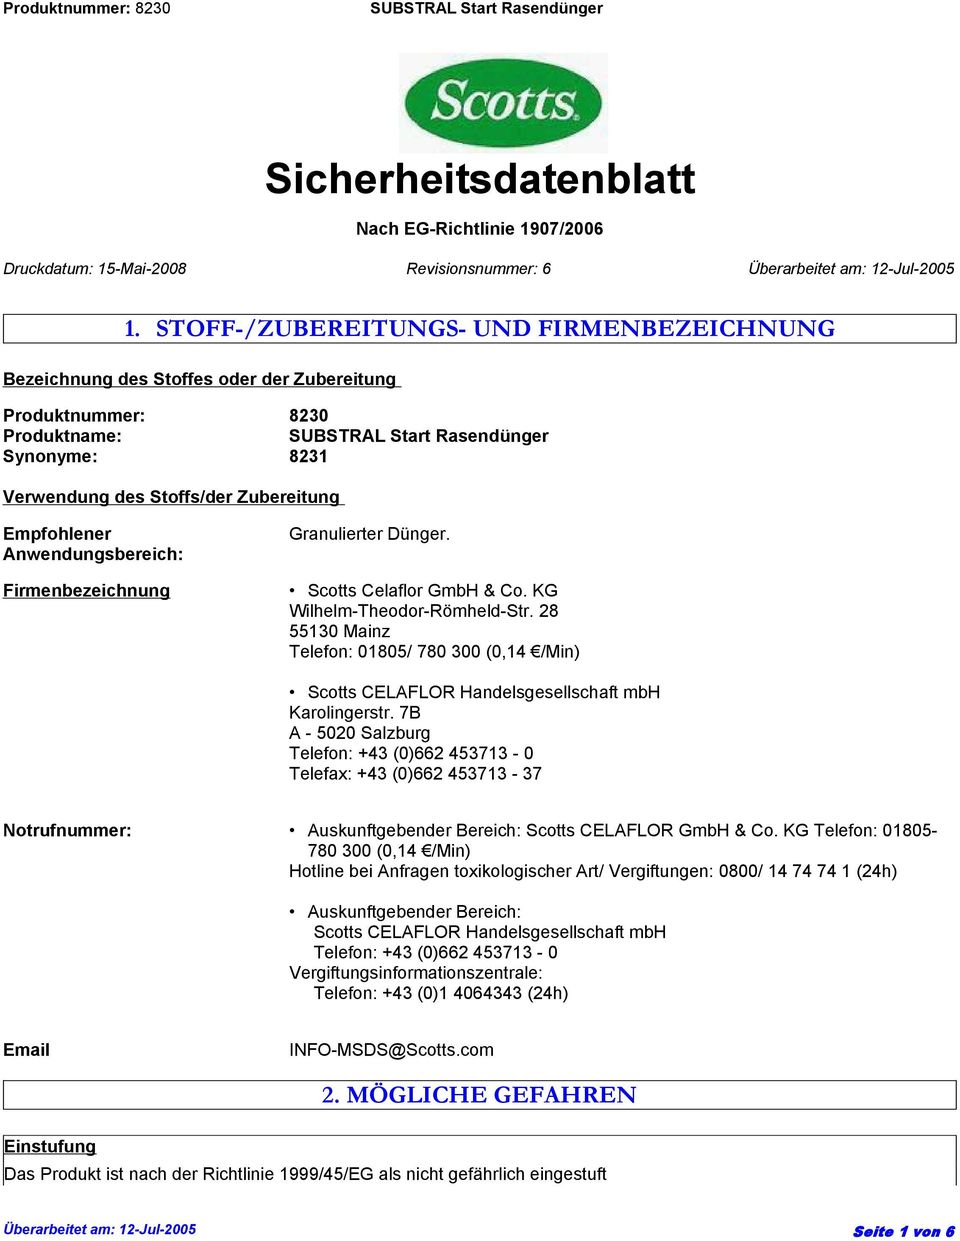 Anwendungsbereich: Firmenbezeichnung Granulierter Dünger. Scotts Celaflor GmbH & Co. KG Wilhelm-Theodor-Römheld-Str.